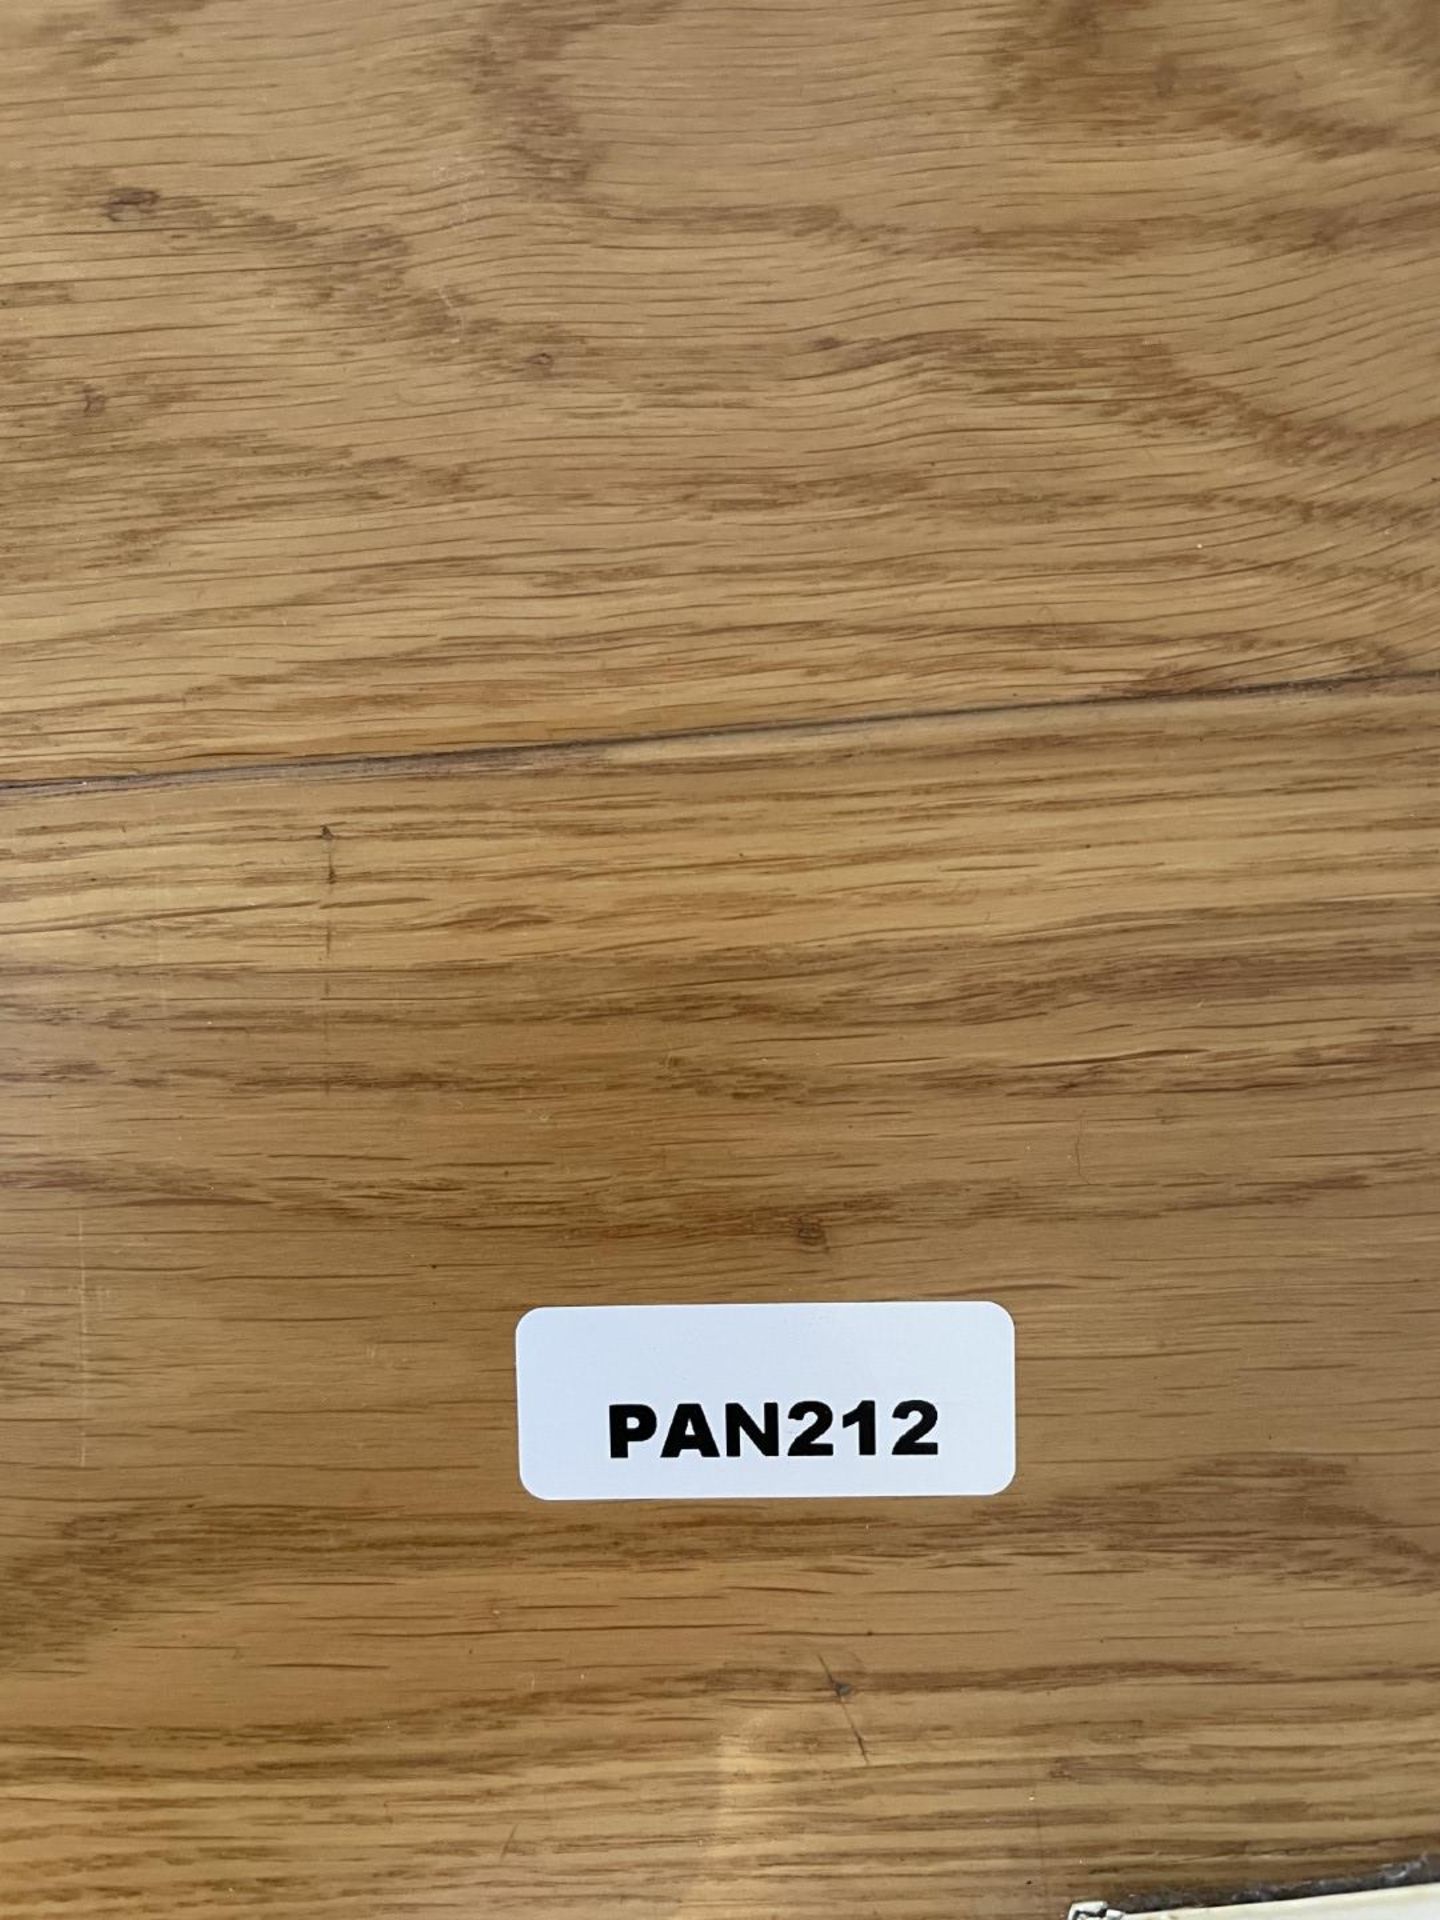 Fine Oak Hardwood Hallway Flooring - 6.3 x 1.2 Metres - Ref: PAN212 - CL896 - NO VAT - Image 5 of 12